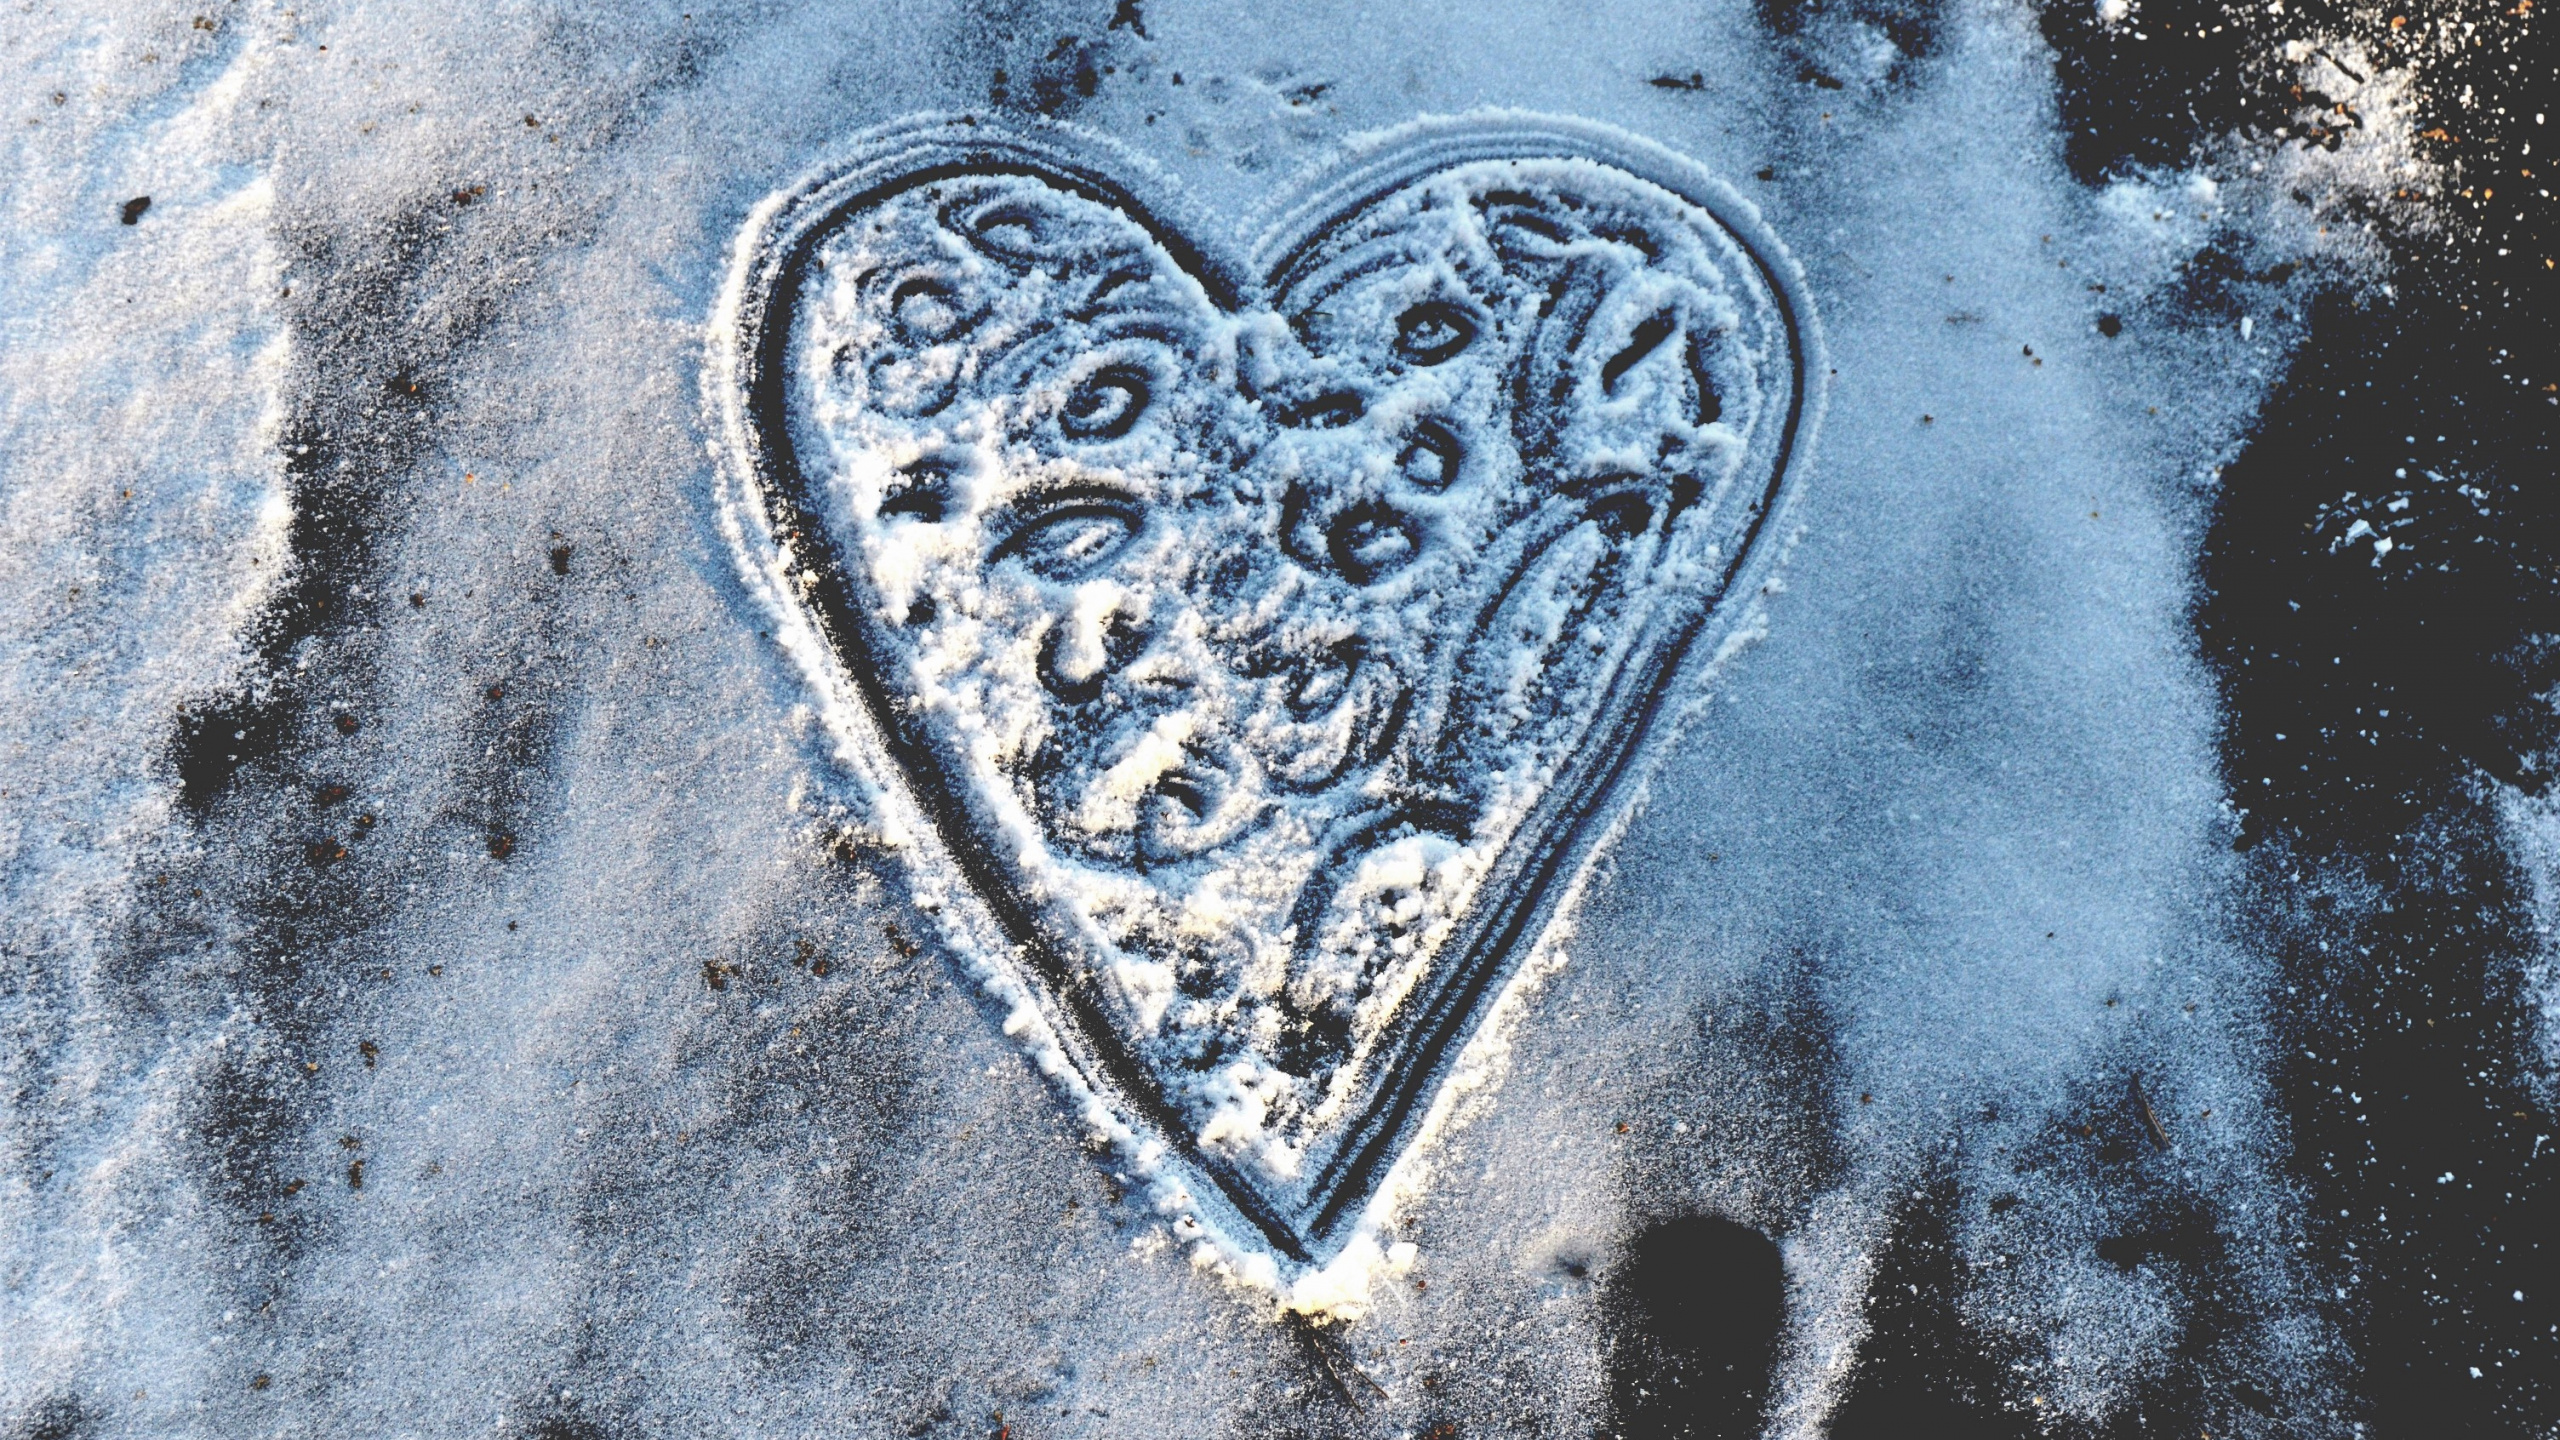 心脏, 器官, 冬天, 冻结, 爱情 壁纸 2560x1440 允许